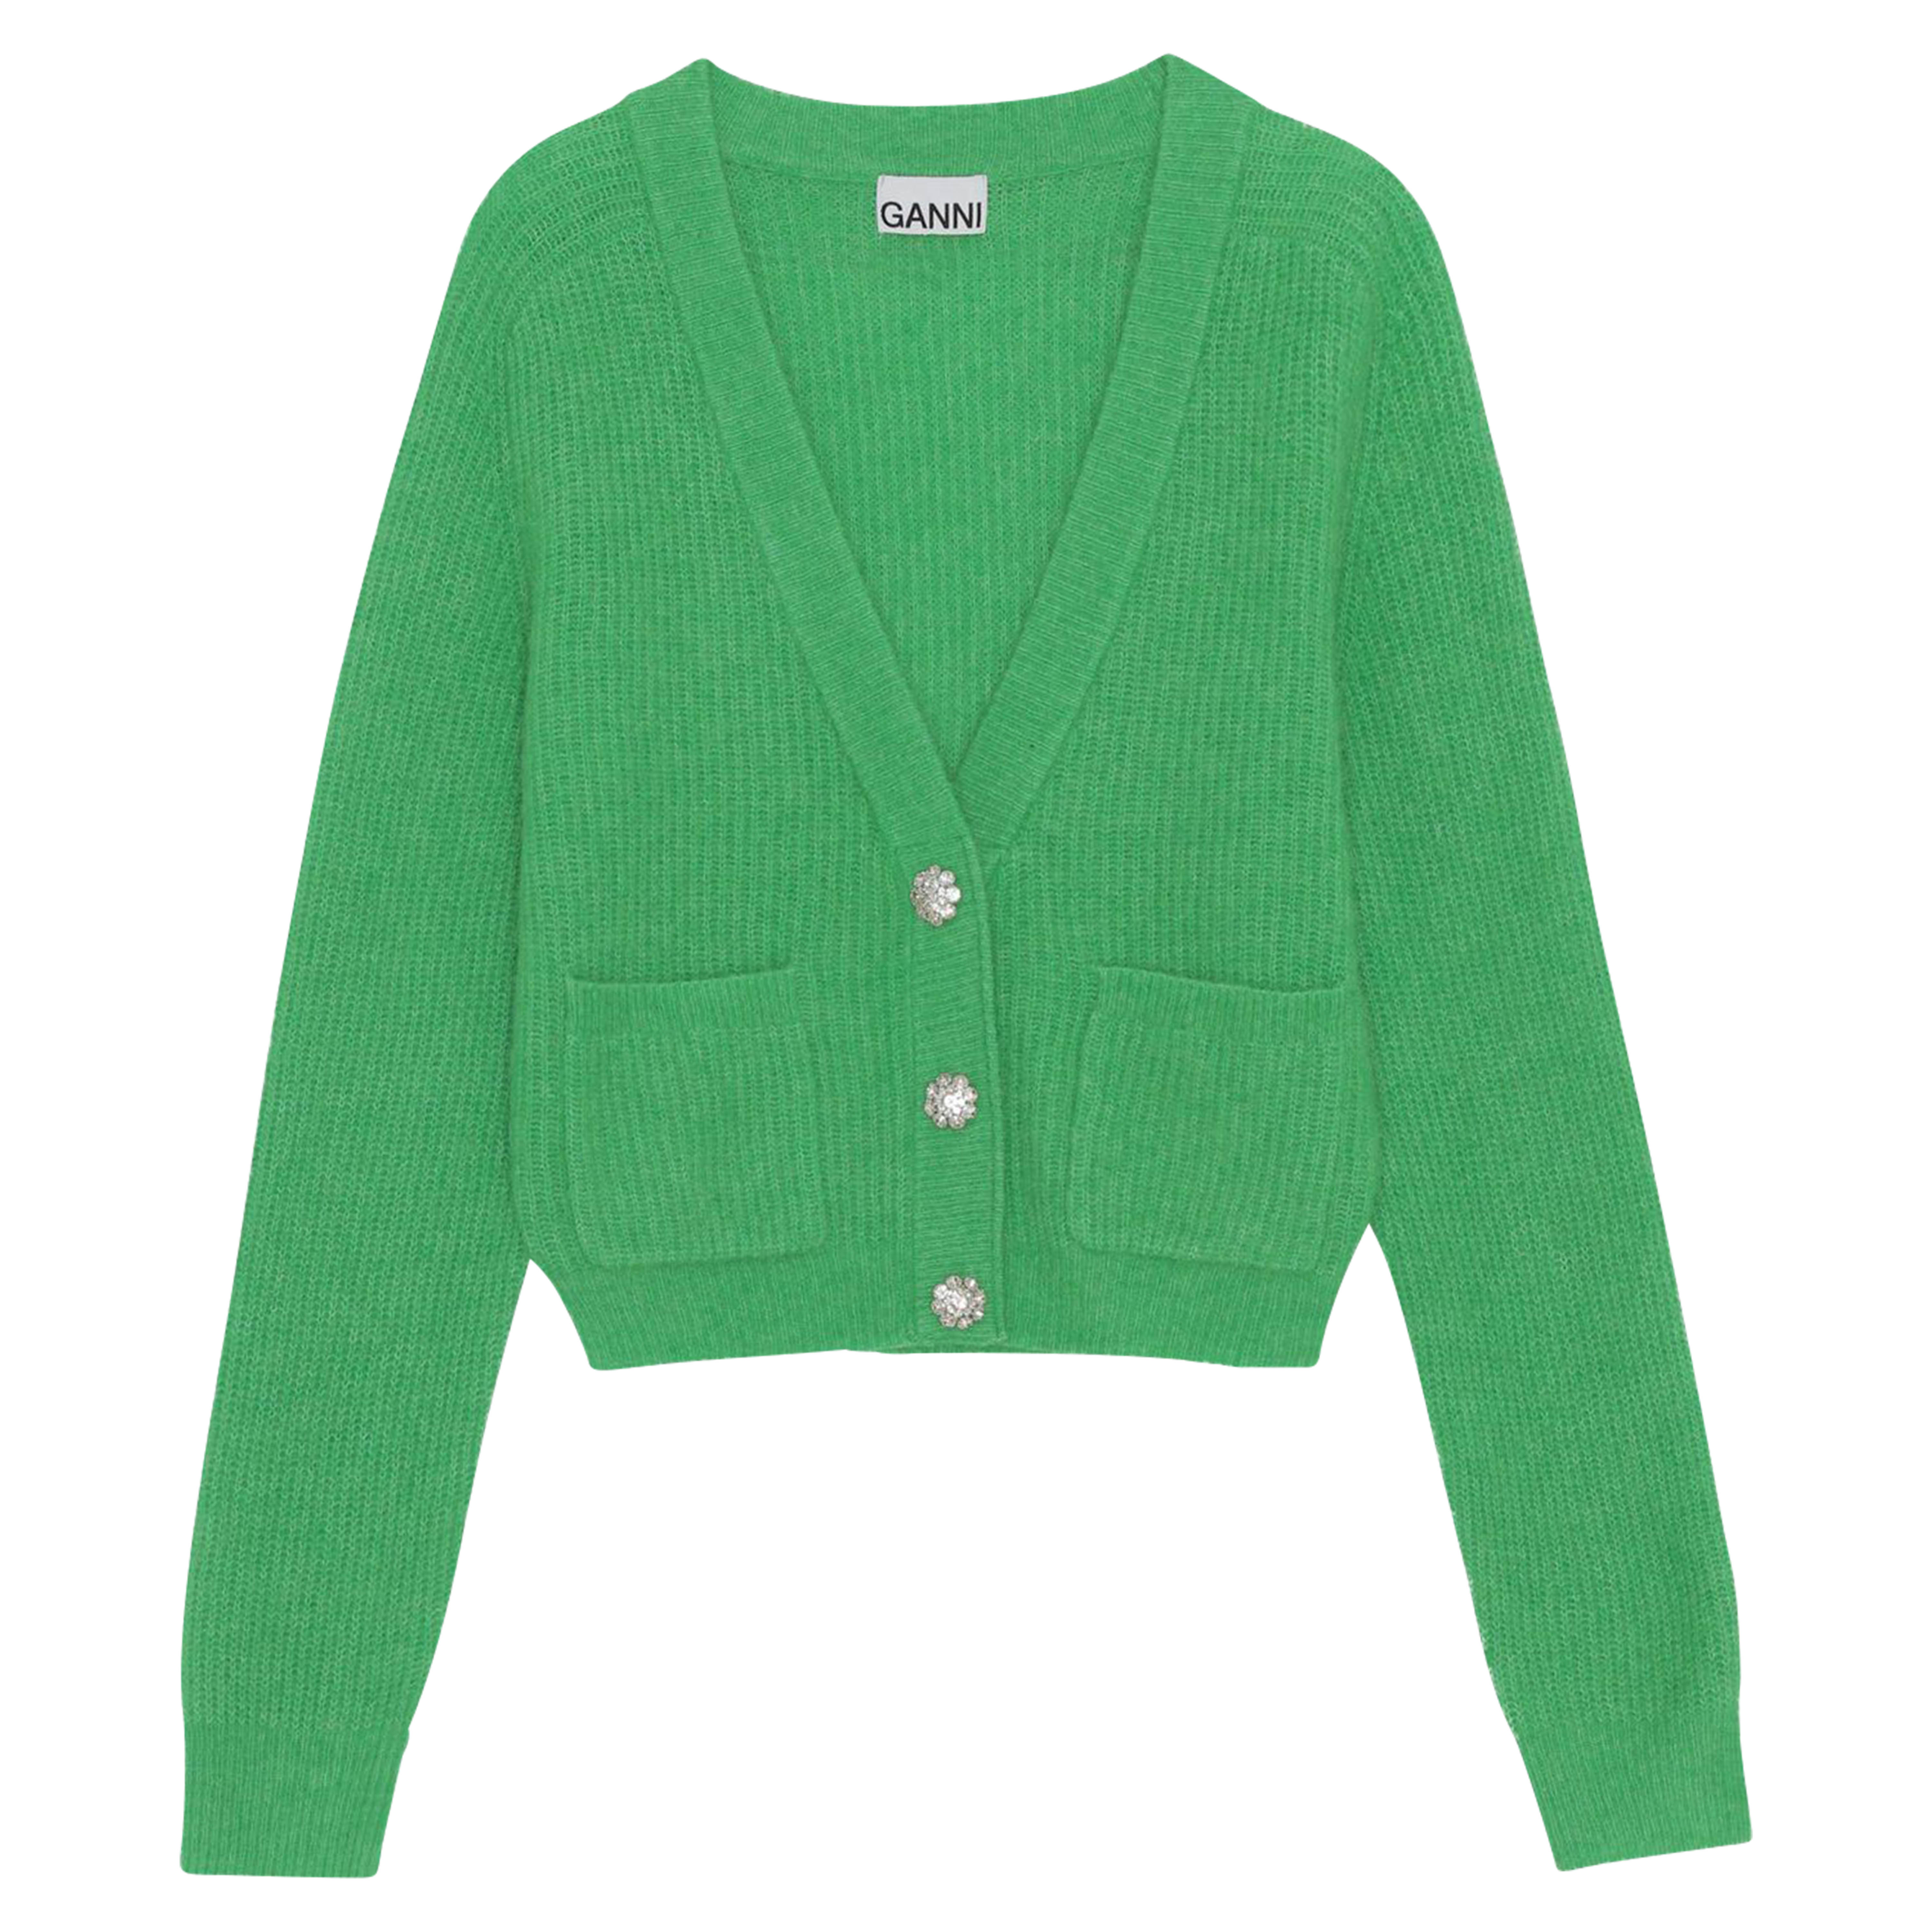 Ganni Soft Knit Cardigan Solid in Kelly Green S